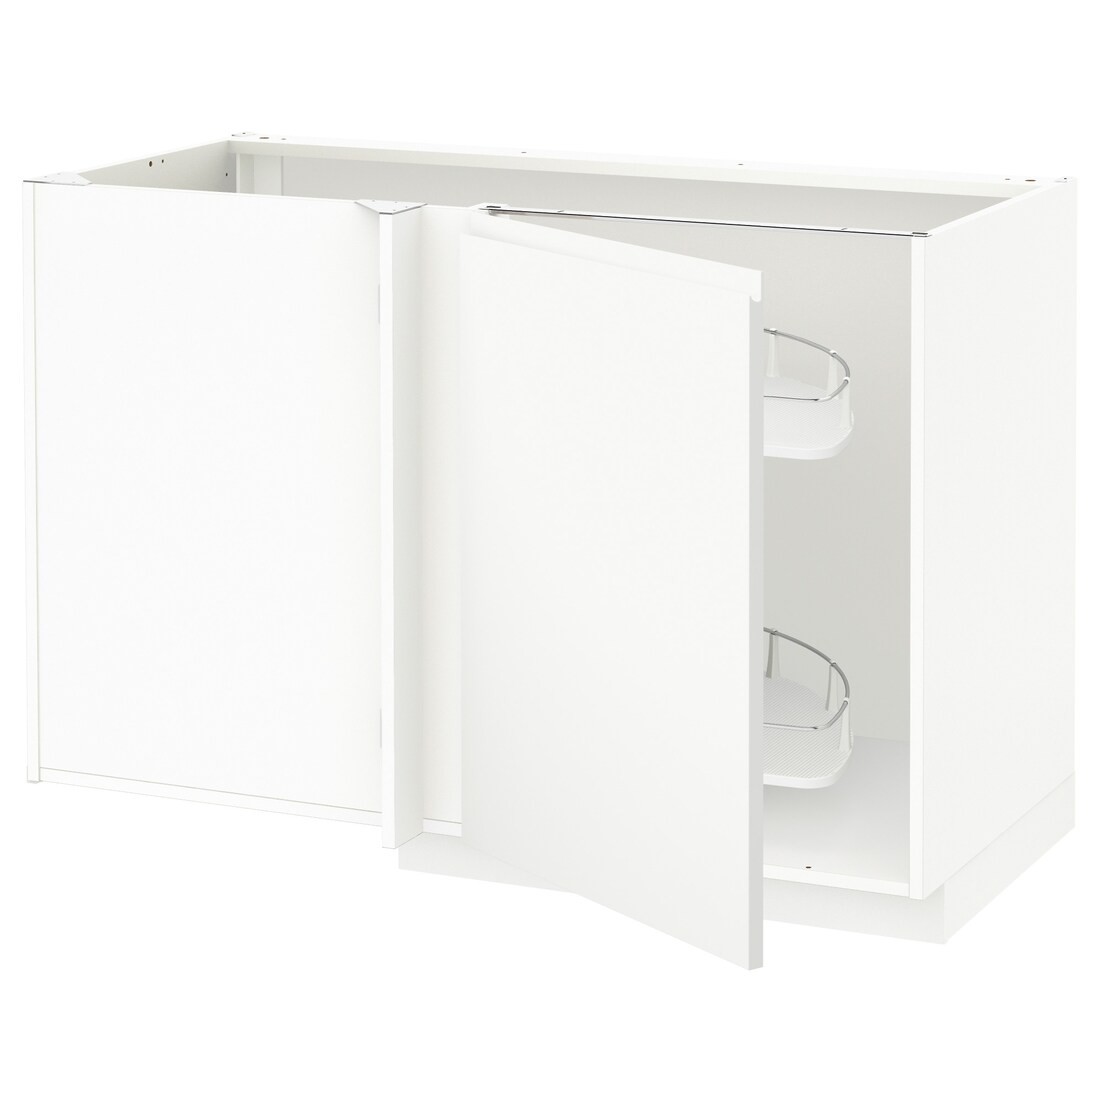 METOD МЕТОД Угловой напольный шкаф с выдвижной секцией, белый / Voxtorp матовый белый, 128x68 см